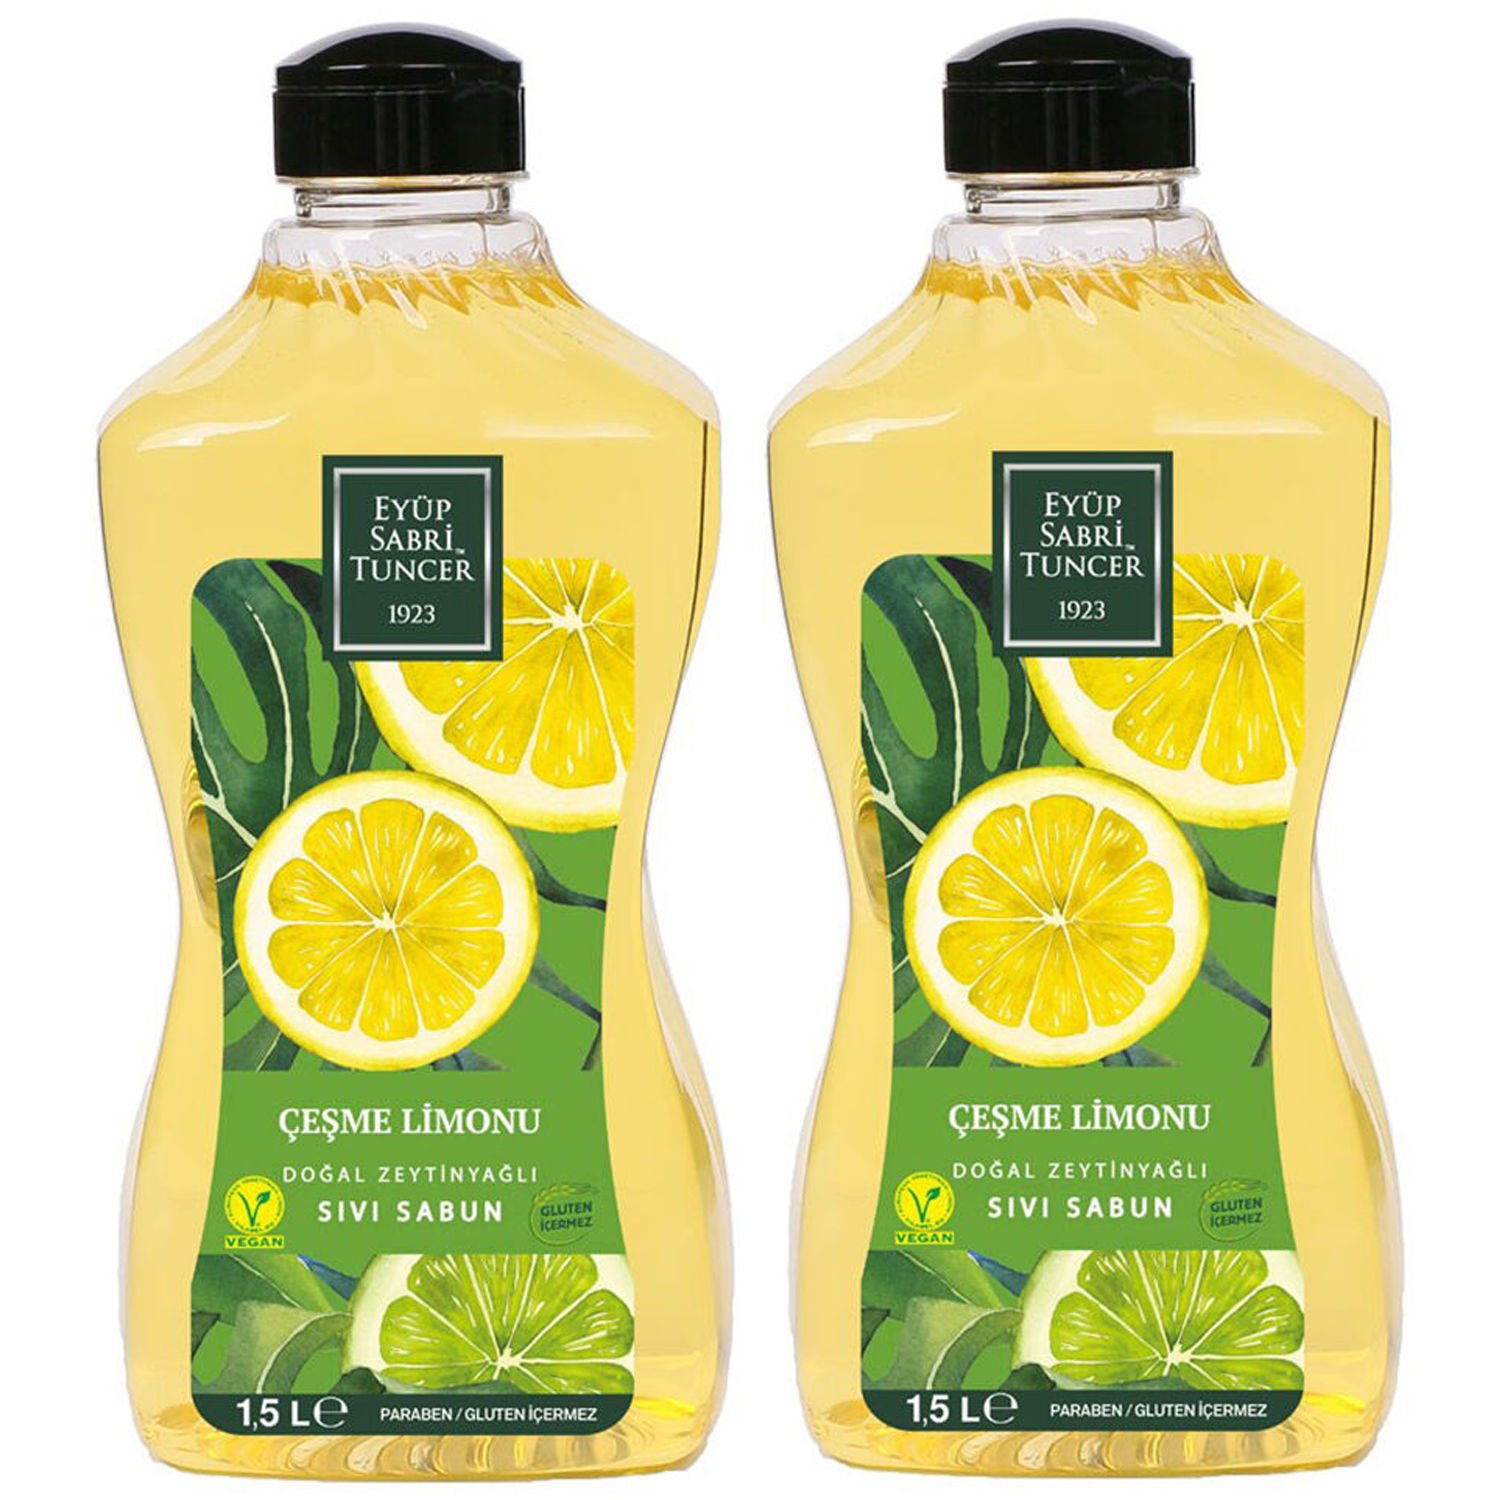 Eyüp Sabri Tuncer Çeşme Limonu Doğal Zeytinyağlı Sıvı Sabun 1.5 lt 2 ADET